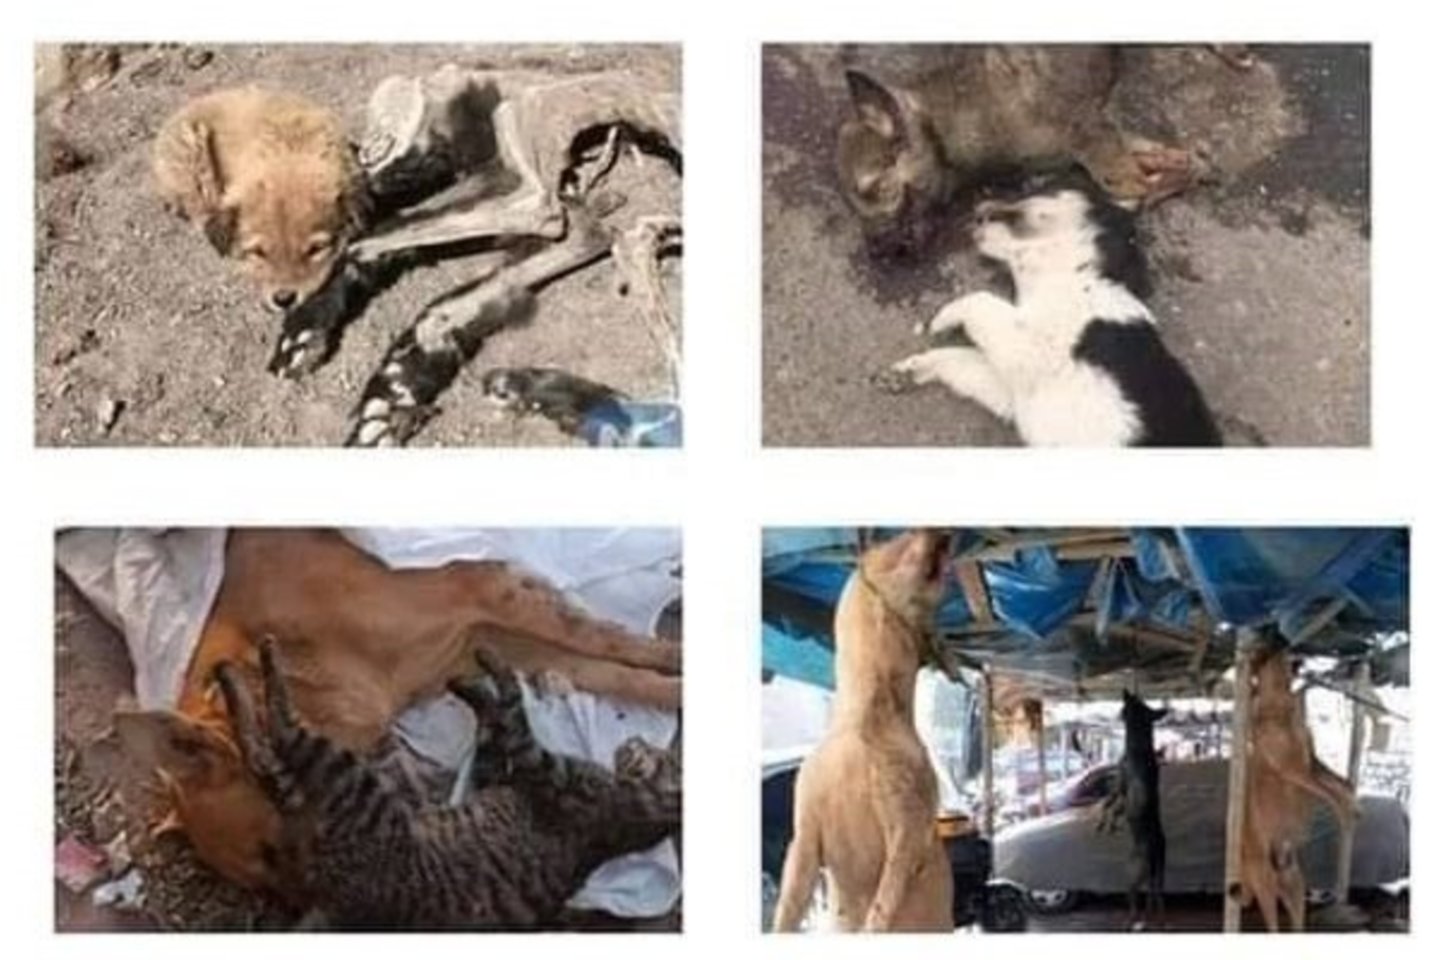 Internete plinta tautiečių prašymas nevykti į Egiptą: taip skelbiant protestą prieš žiauriais būdais žudomus gyvūnus.